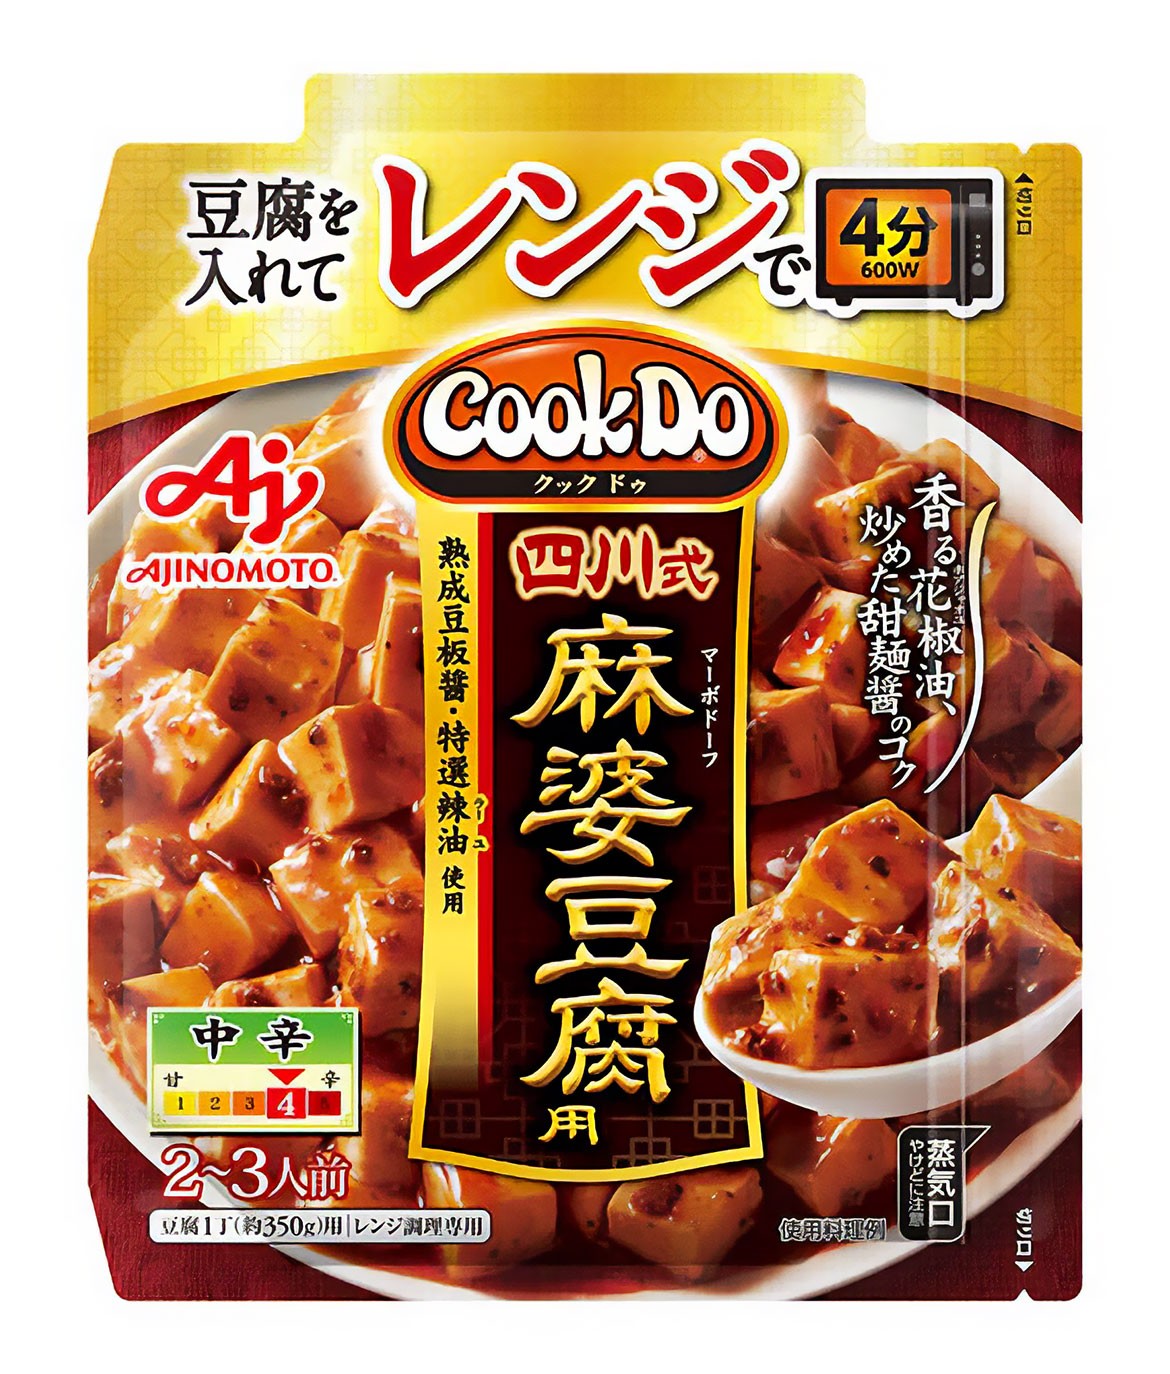 照喜名さんがパッケージデザインを担当した「Cook Do®」シリーズ「四川式麻婆豆腐用」